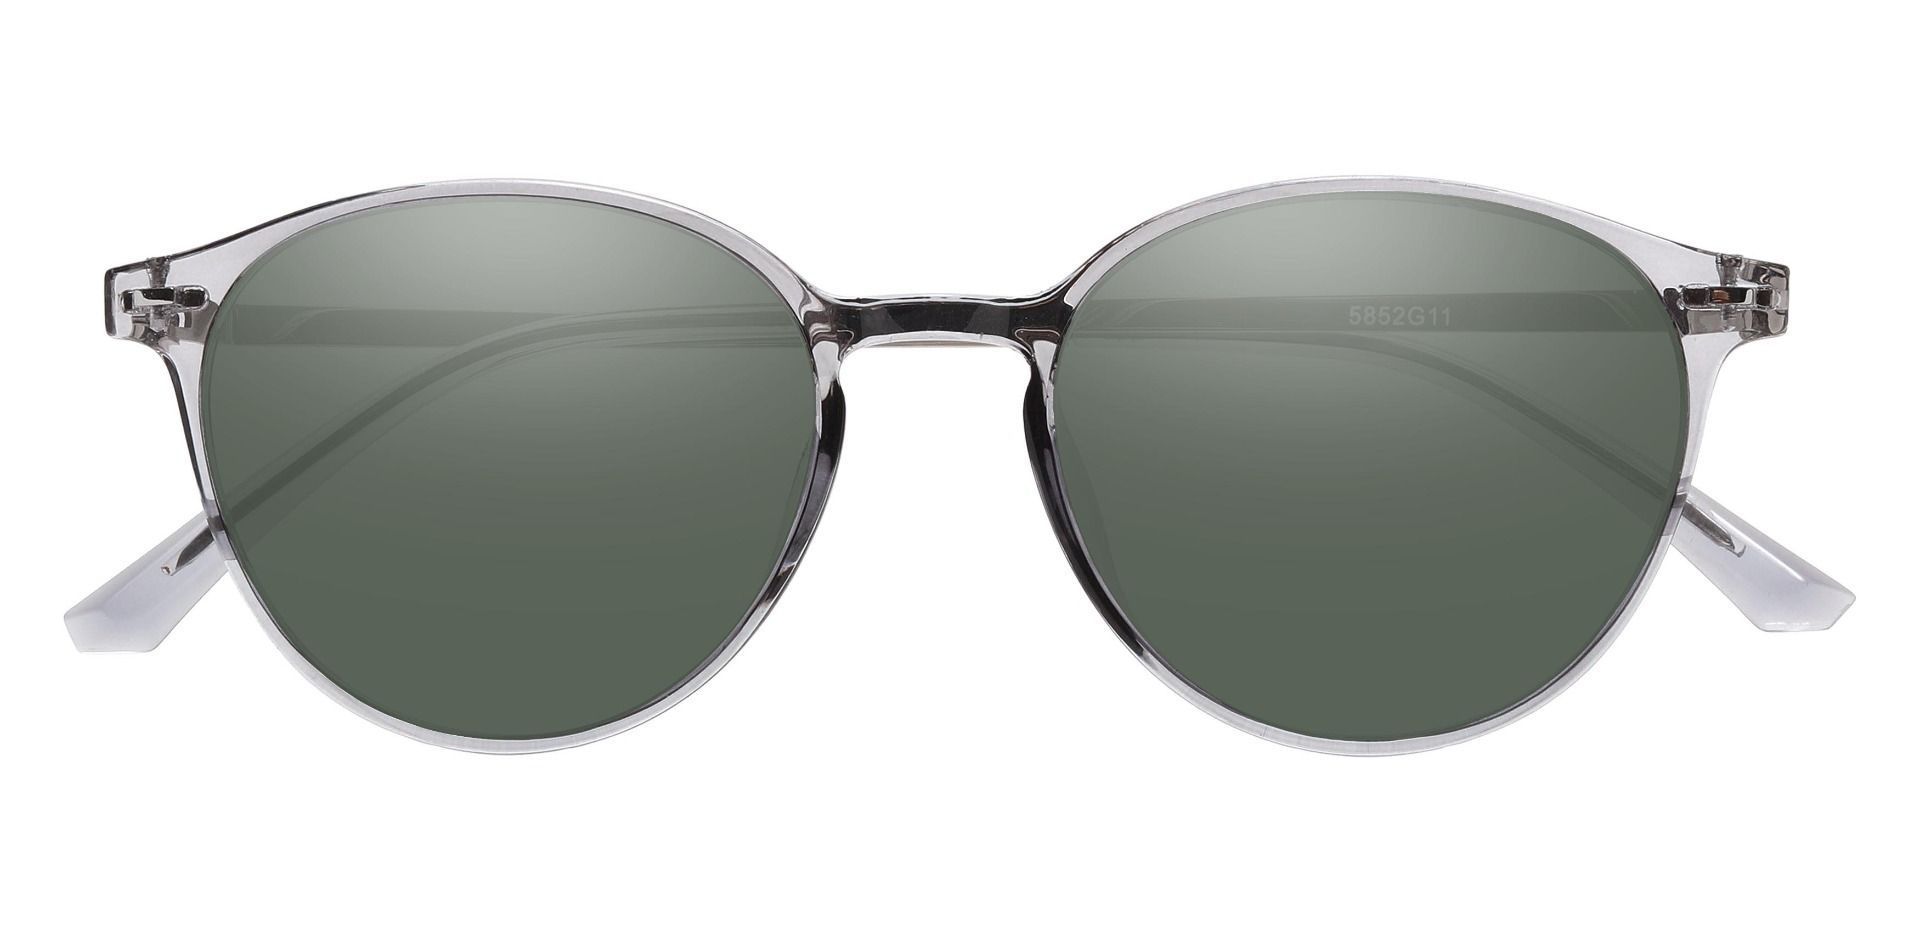 Springer Round Reading Sunglasses - Gray Frame With Green Lenses